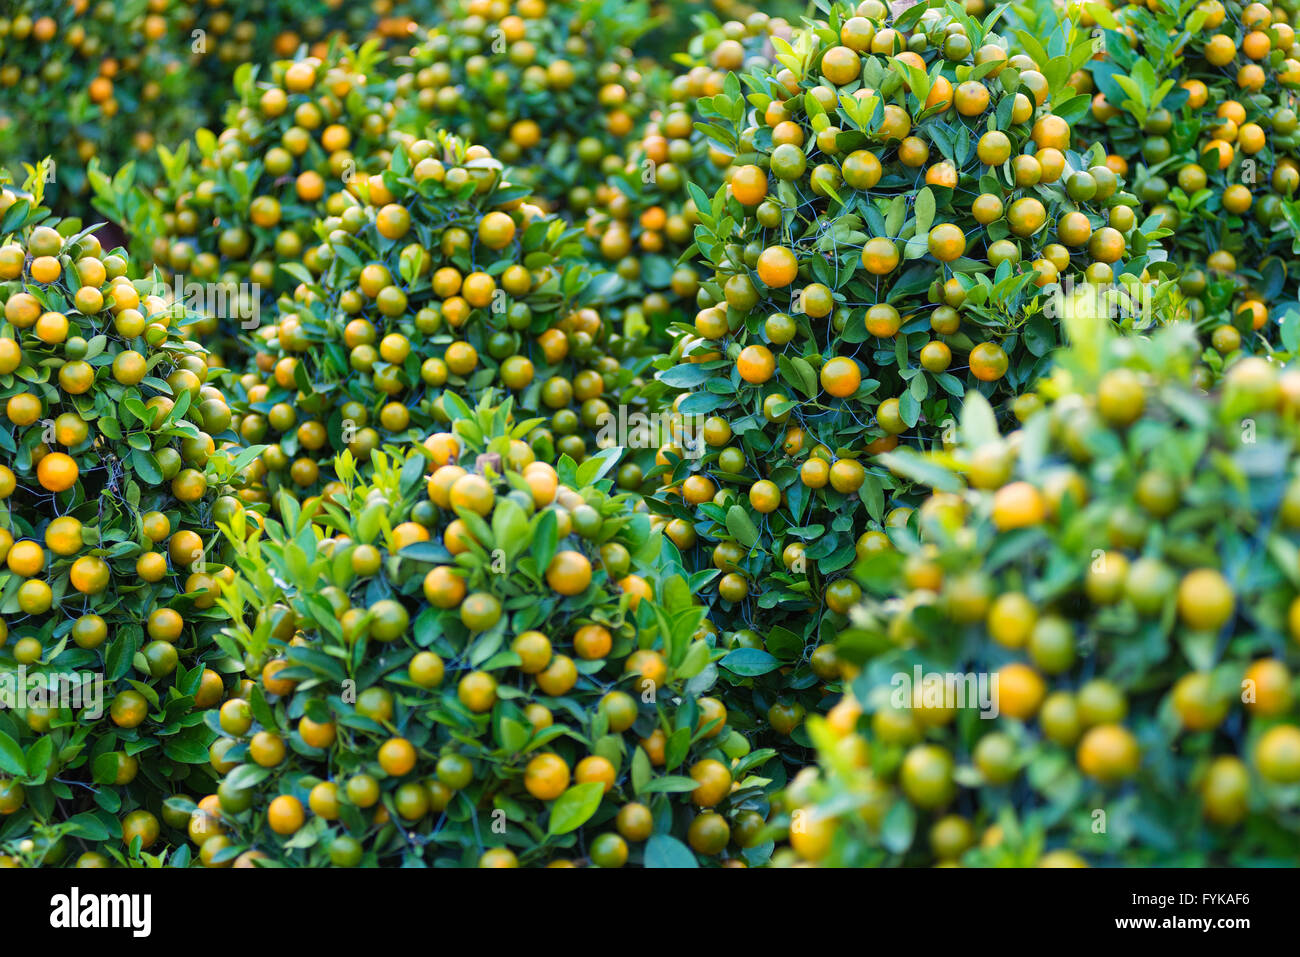 kumquat trees for Tet (Vietnamese New Year) Stock Photo